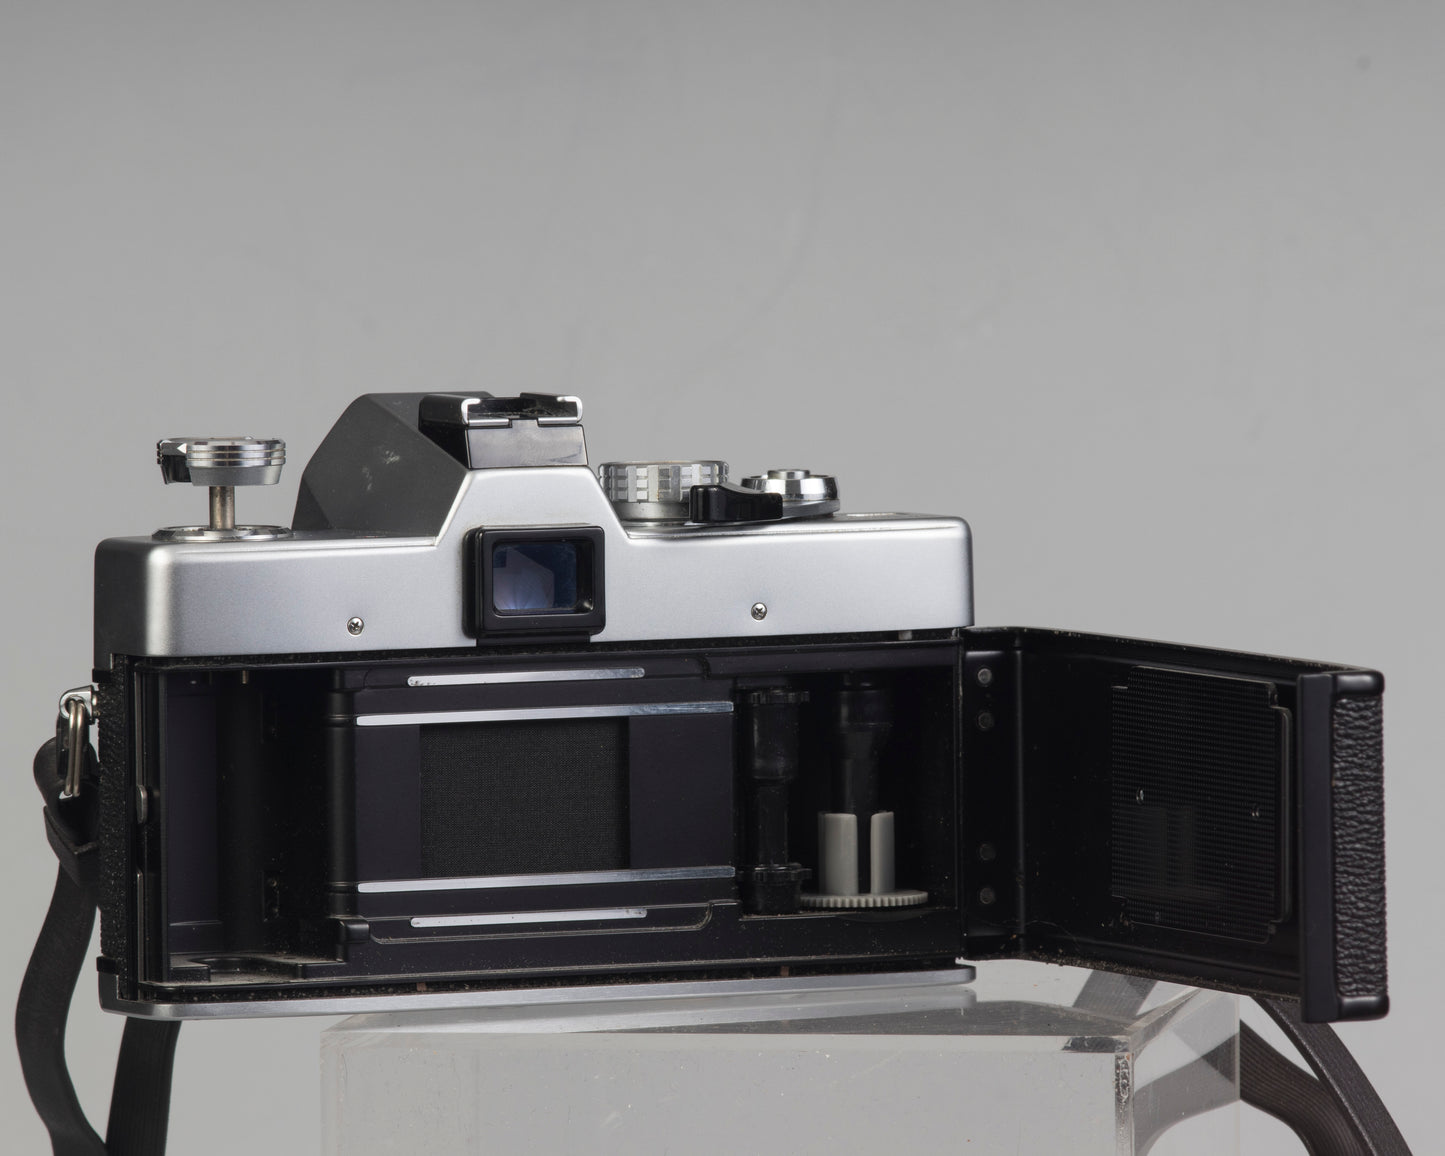 Minolta SRT 200 35mm SLR w/ Rokkor 50mm f1.7 lens